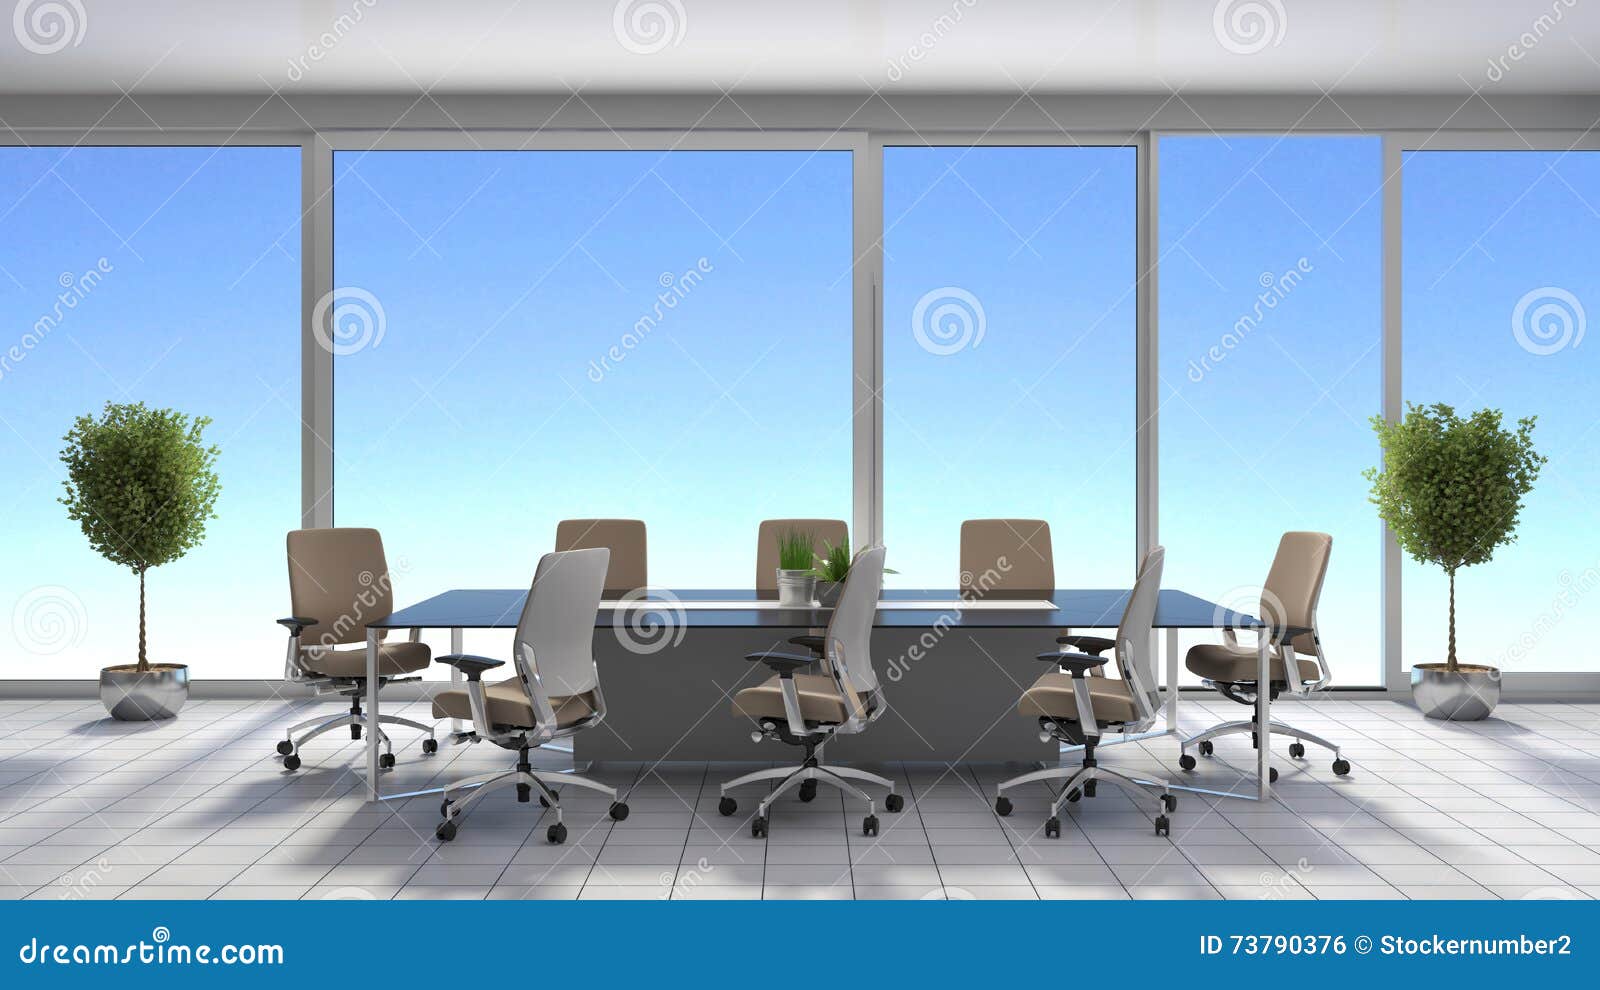 office interior d illustration job 73790376